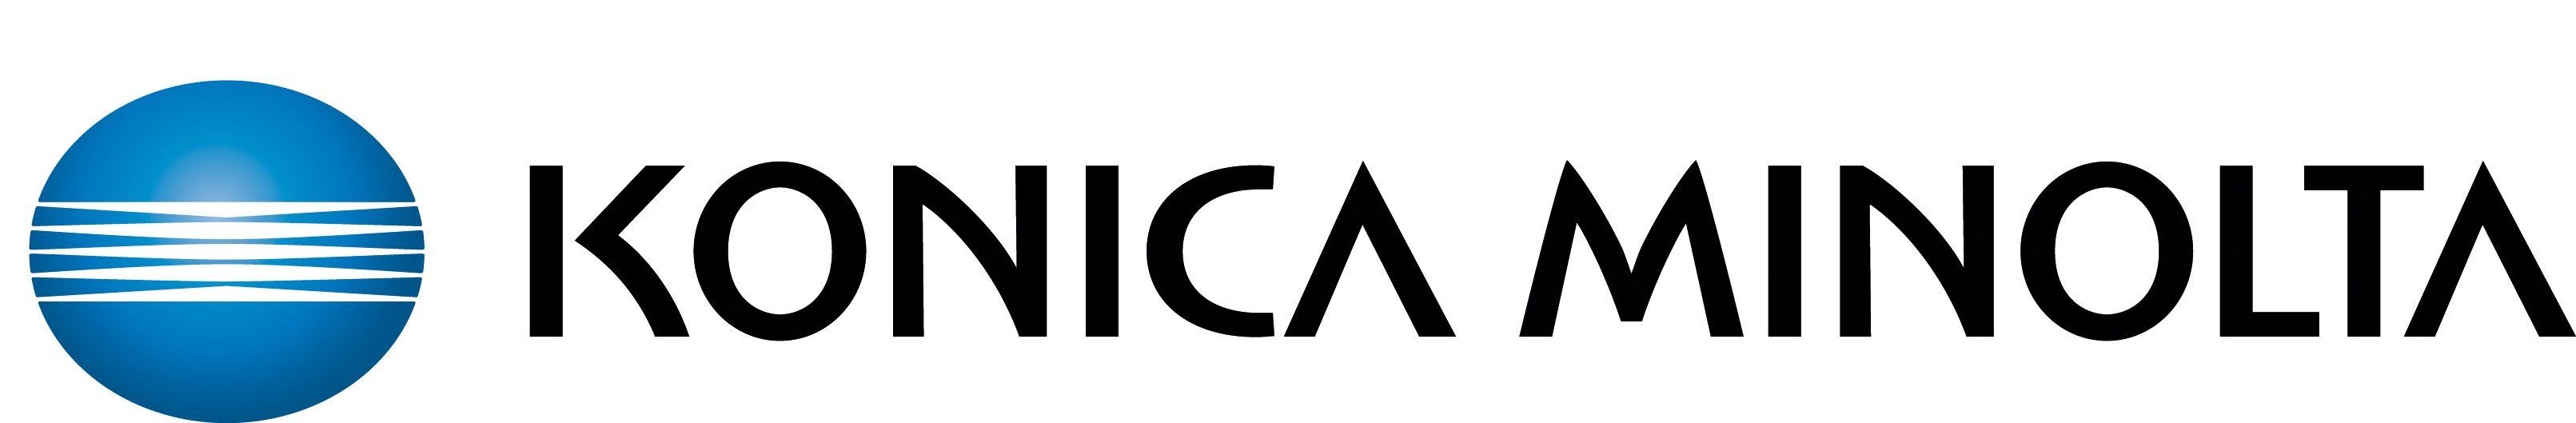 Minolta Logo - Konica minolta Logos